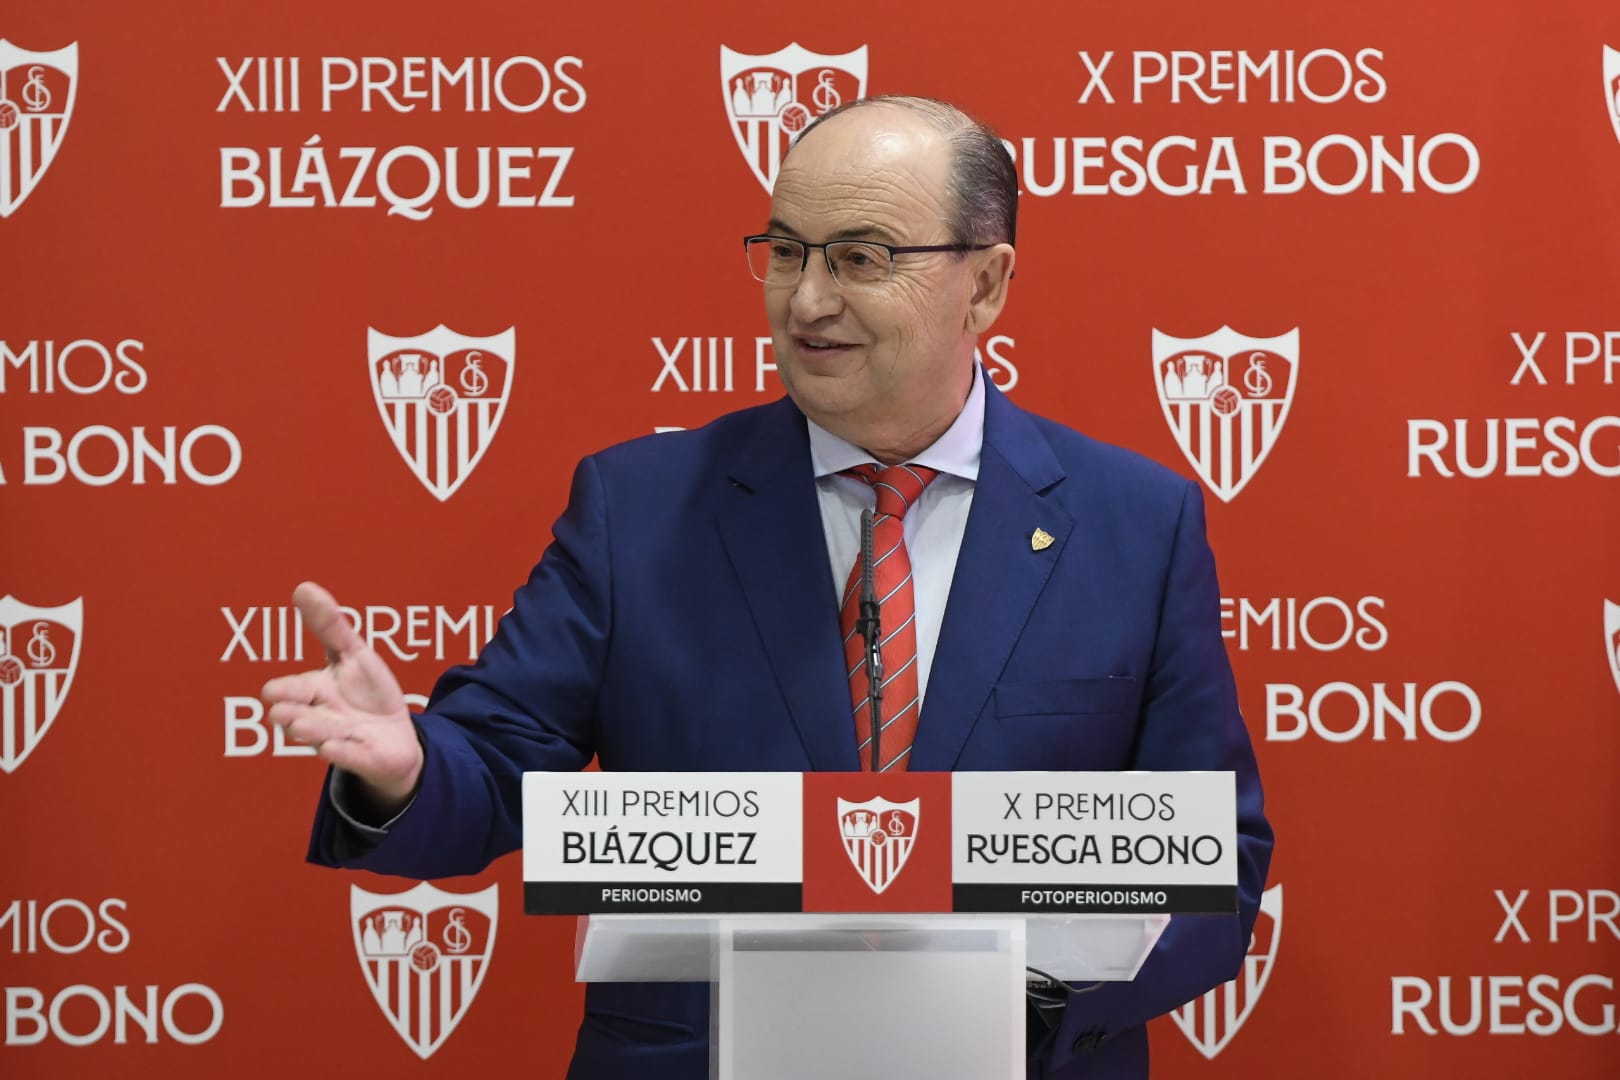 El presidente del Sevilla FC, en los XIII Premios Blázquez